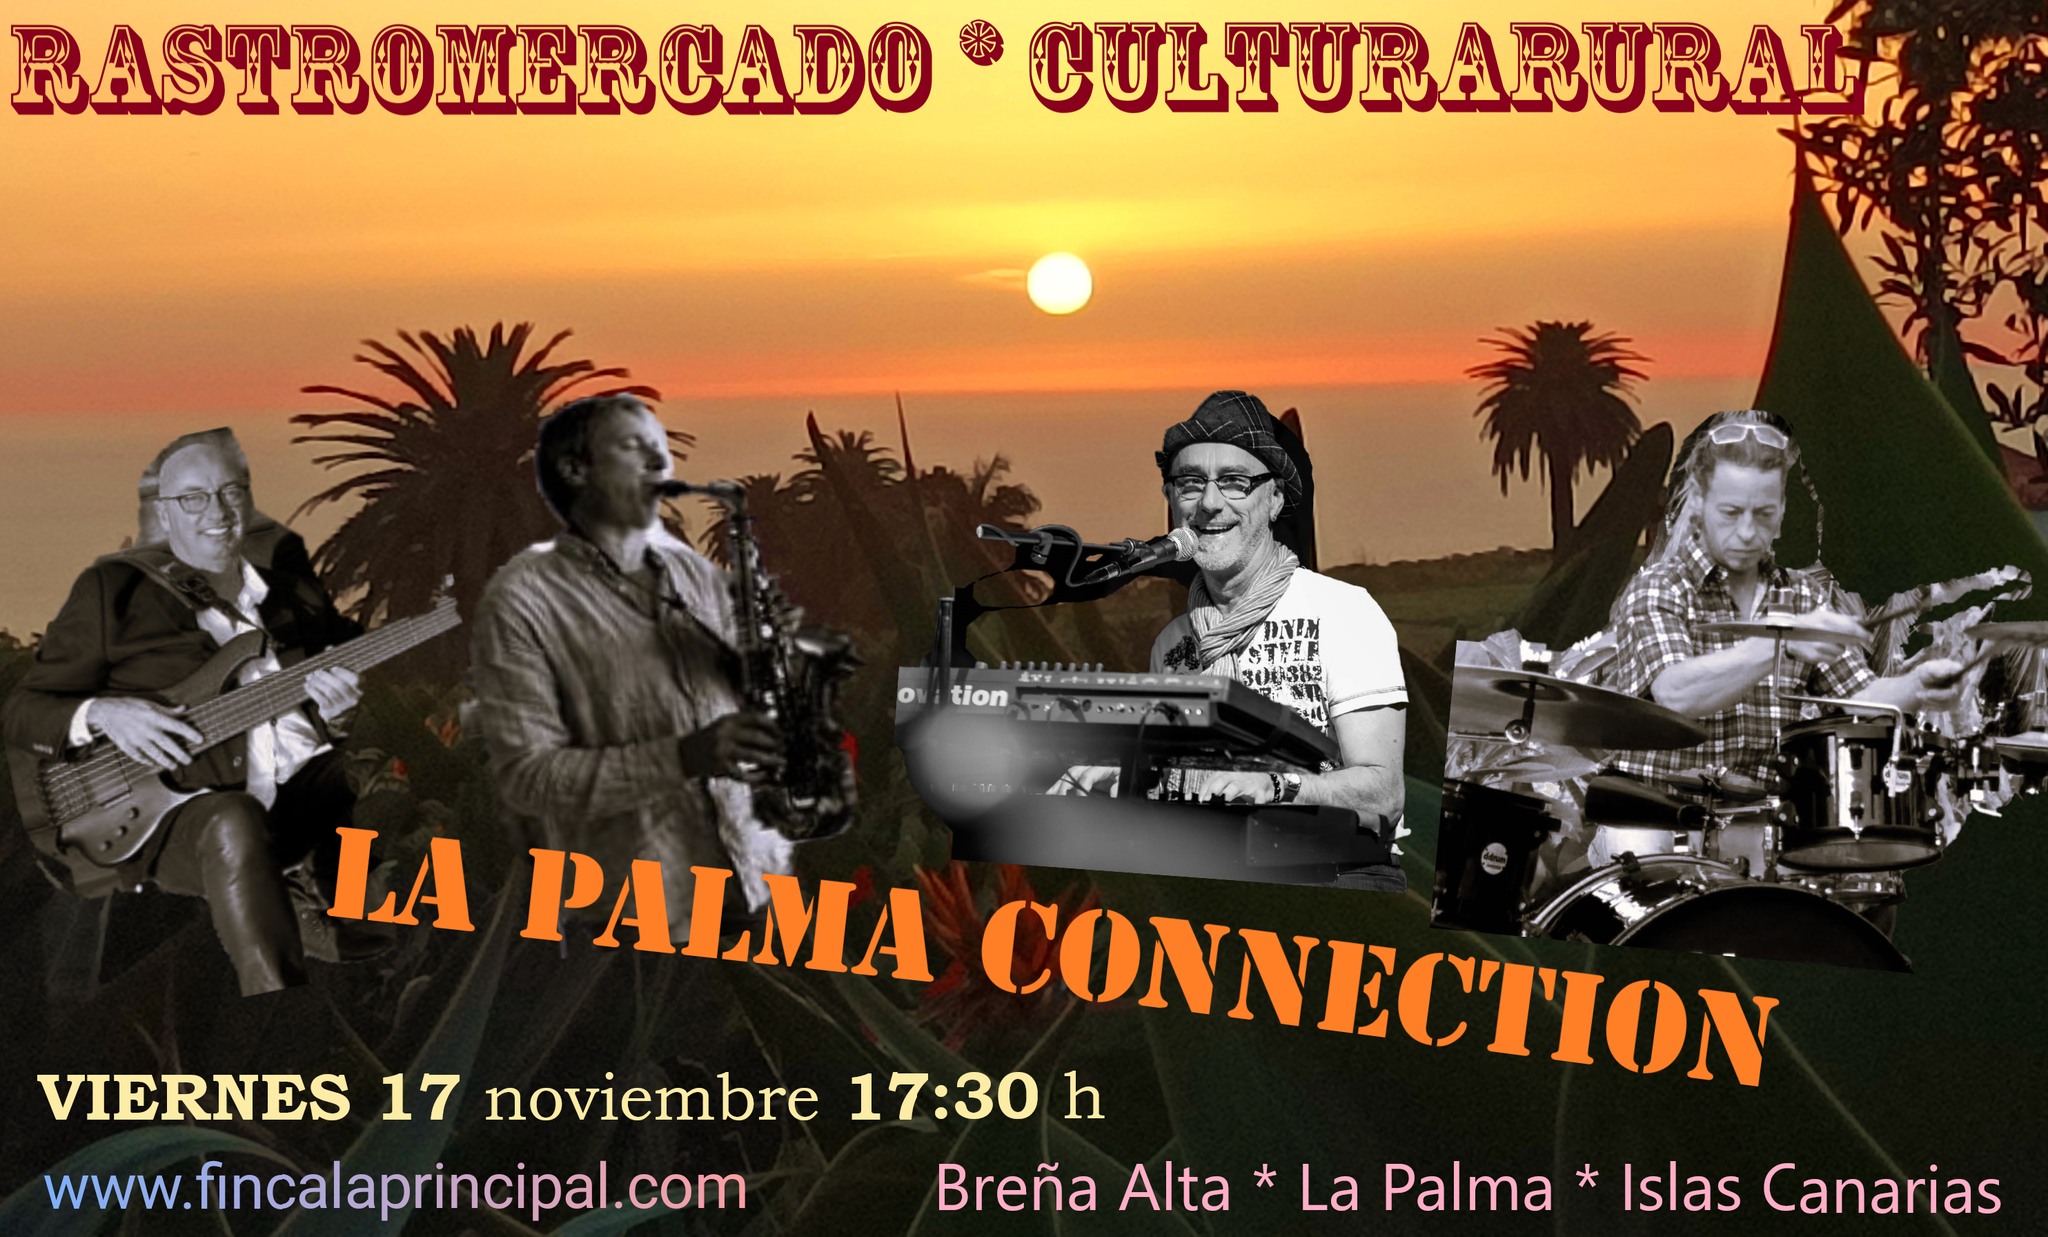 Rastro Finca La Principal con música de "La Palma Connection"